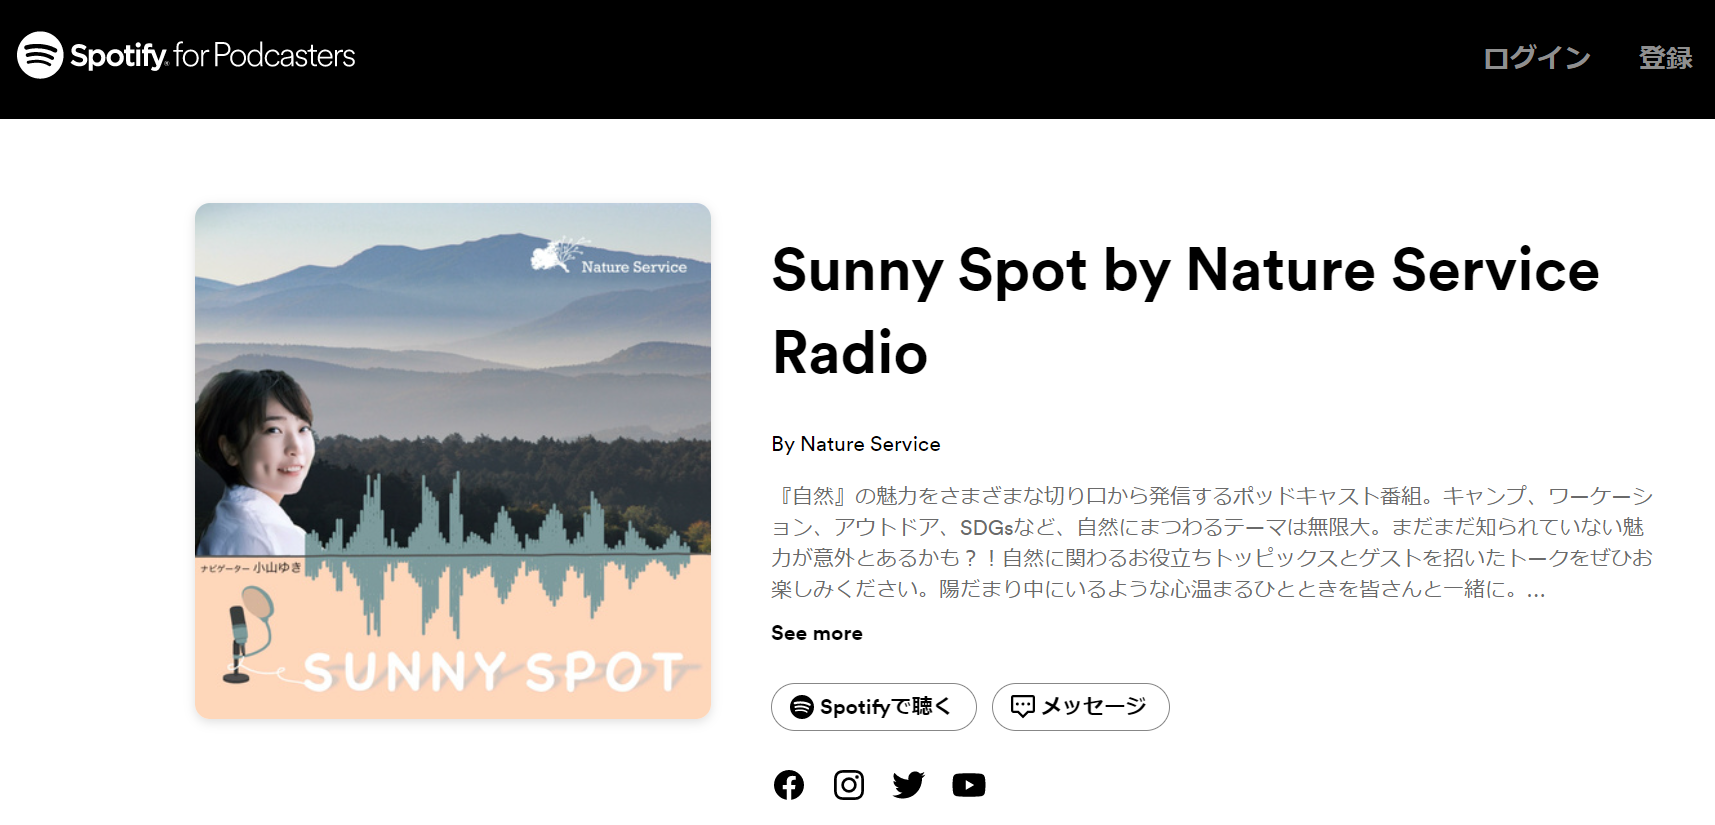 【いまさらですが。。】「Sunny Spot by Nature Service Radio」に出させていただきました_b0008655_15185391.png